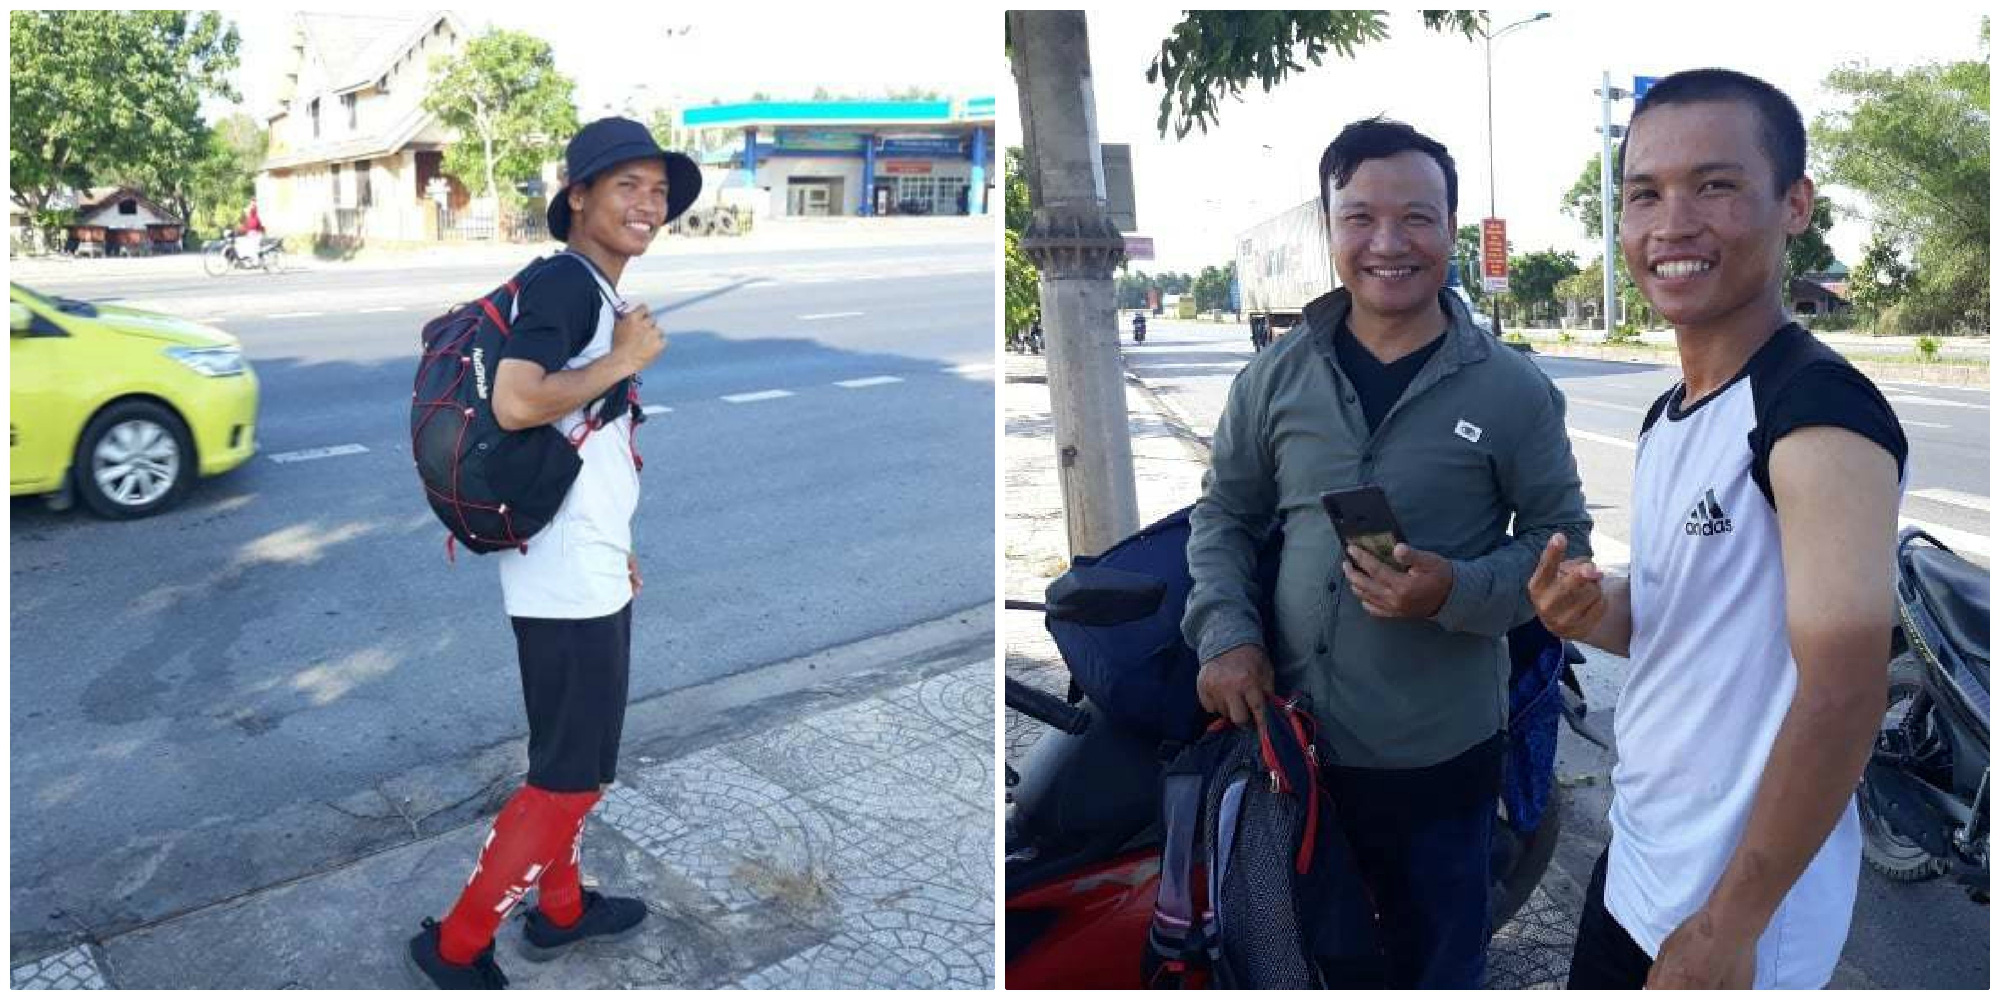 45 ngày đi bộ xuyên Việt với 0 đồng, chàng trai vừa xin ăn, làm thuê vừa quyên góp 127 triệu cho người nghèo - Ảnh 2.